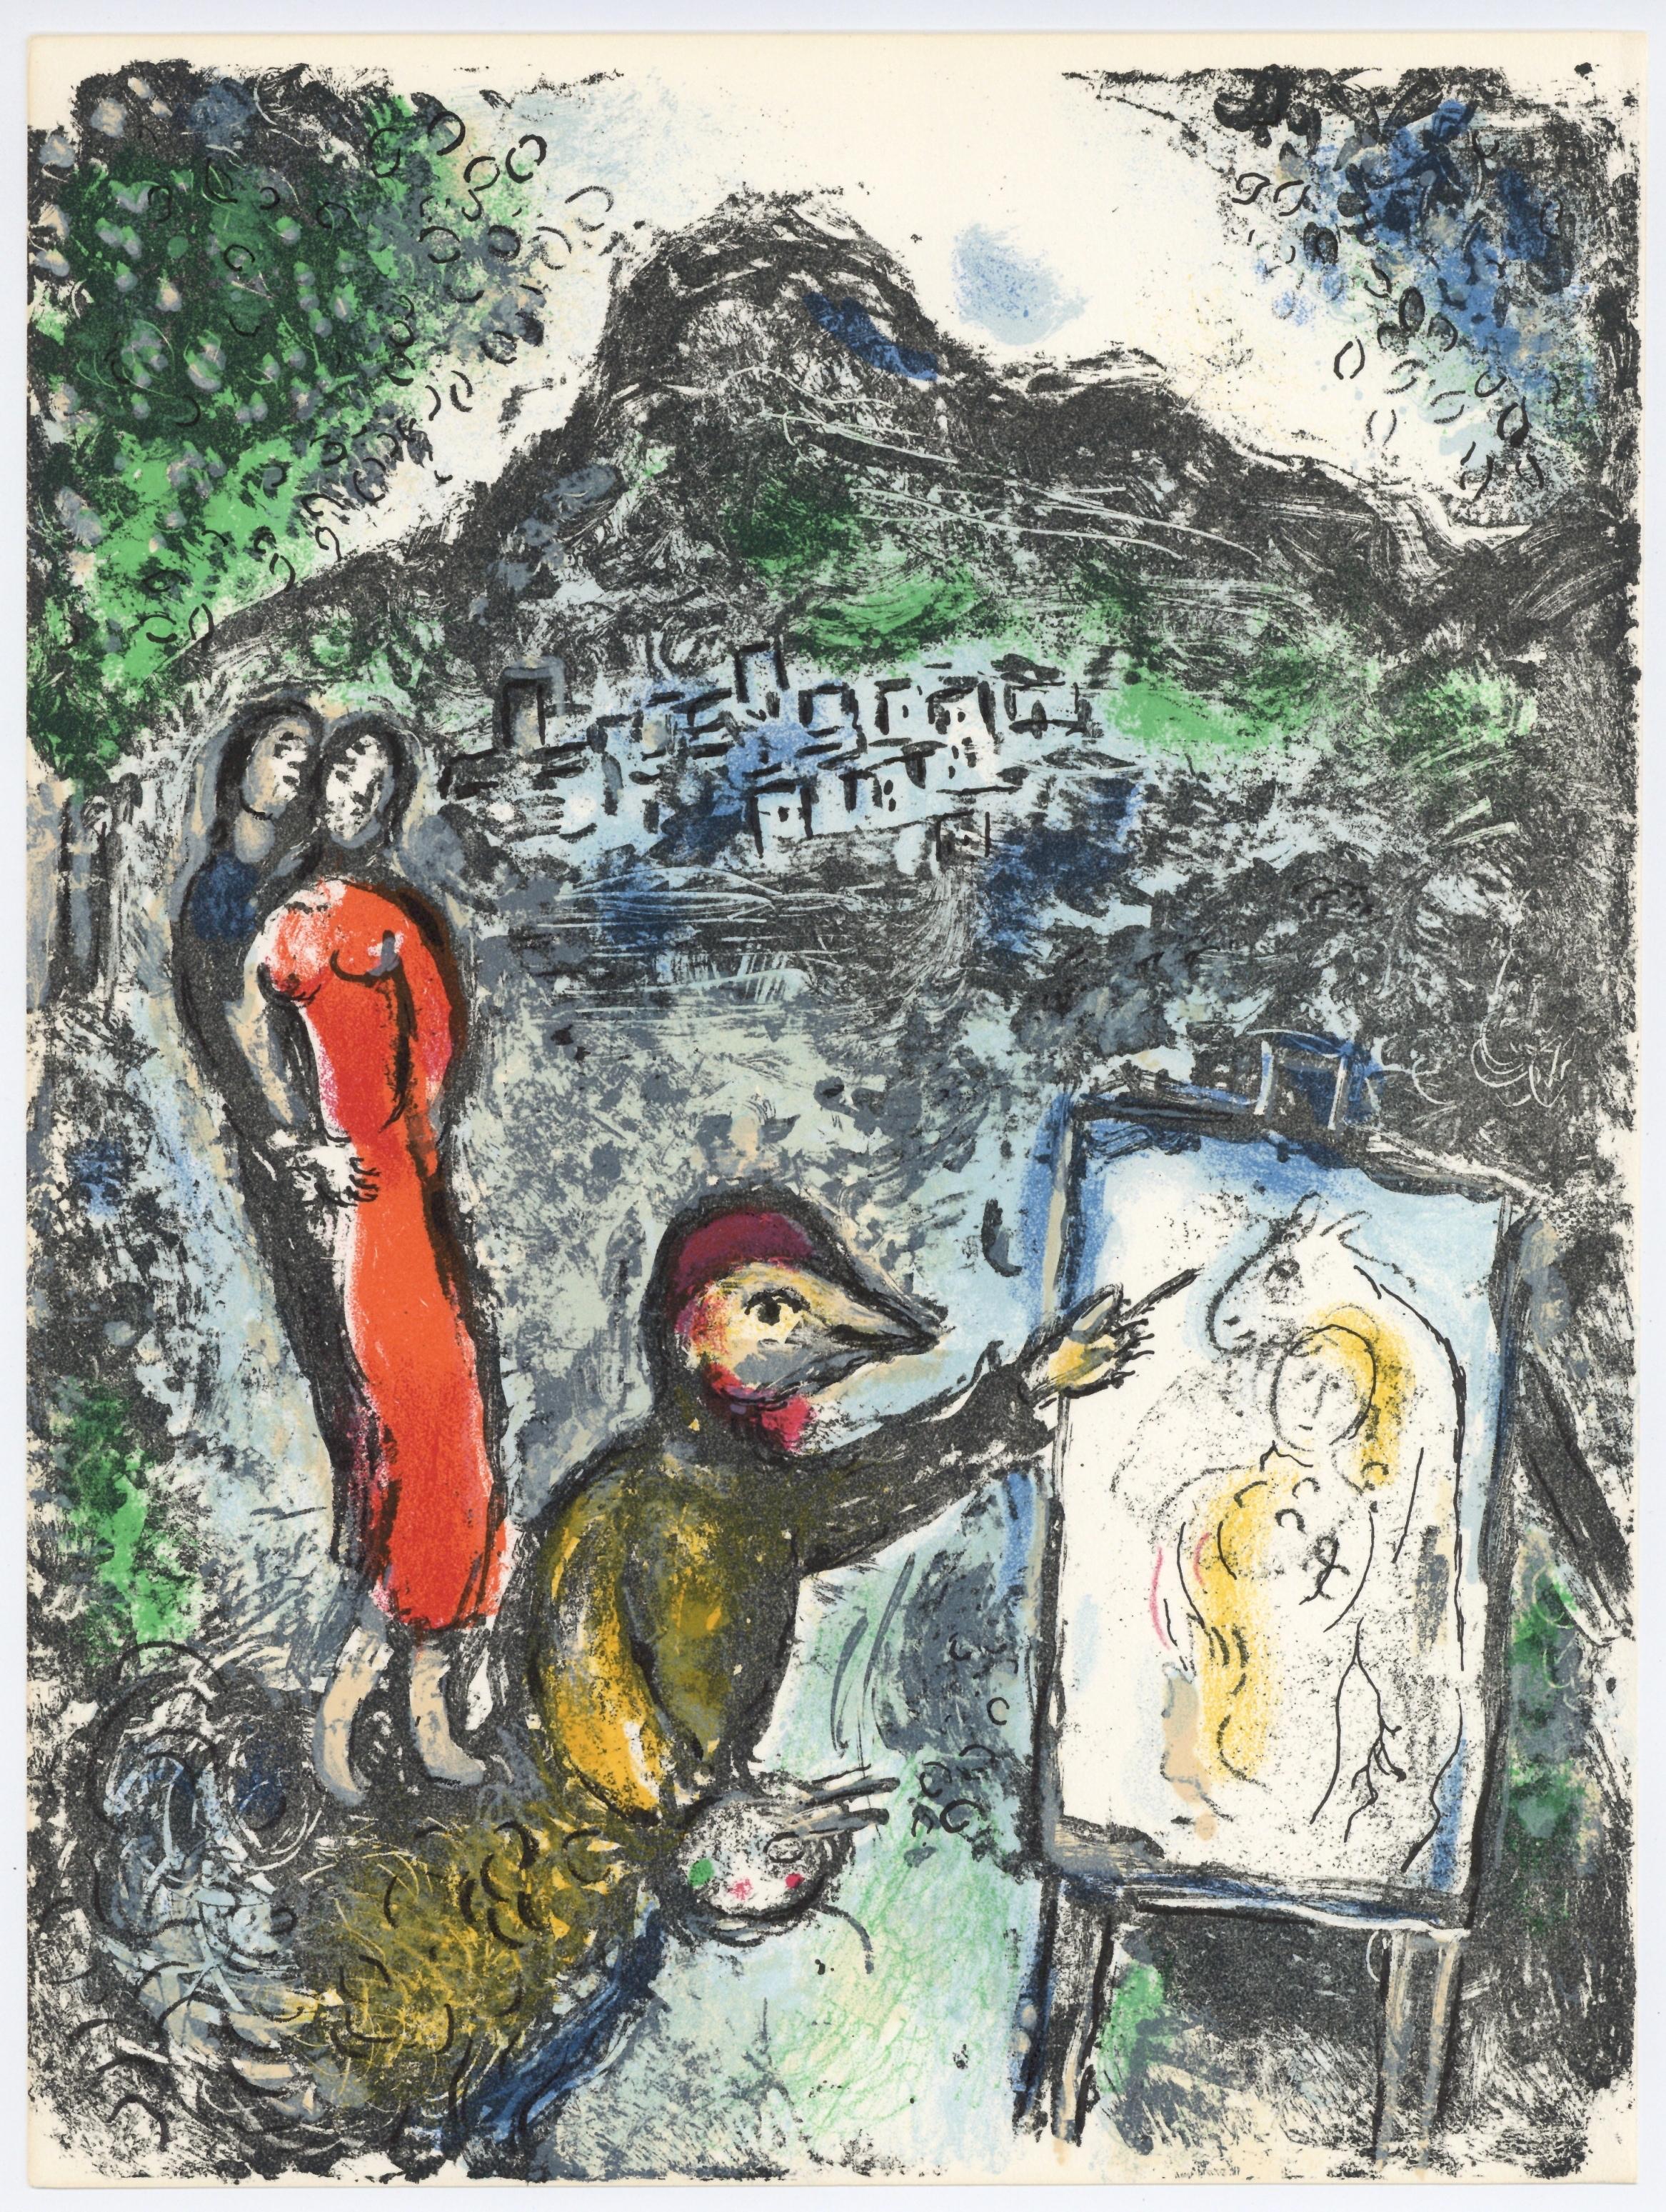 Marc Chagall Portrait Print - "Devant Saint-Jeannet" original lithograph